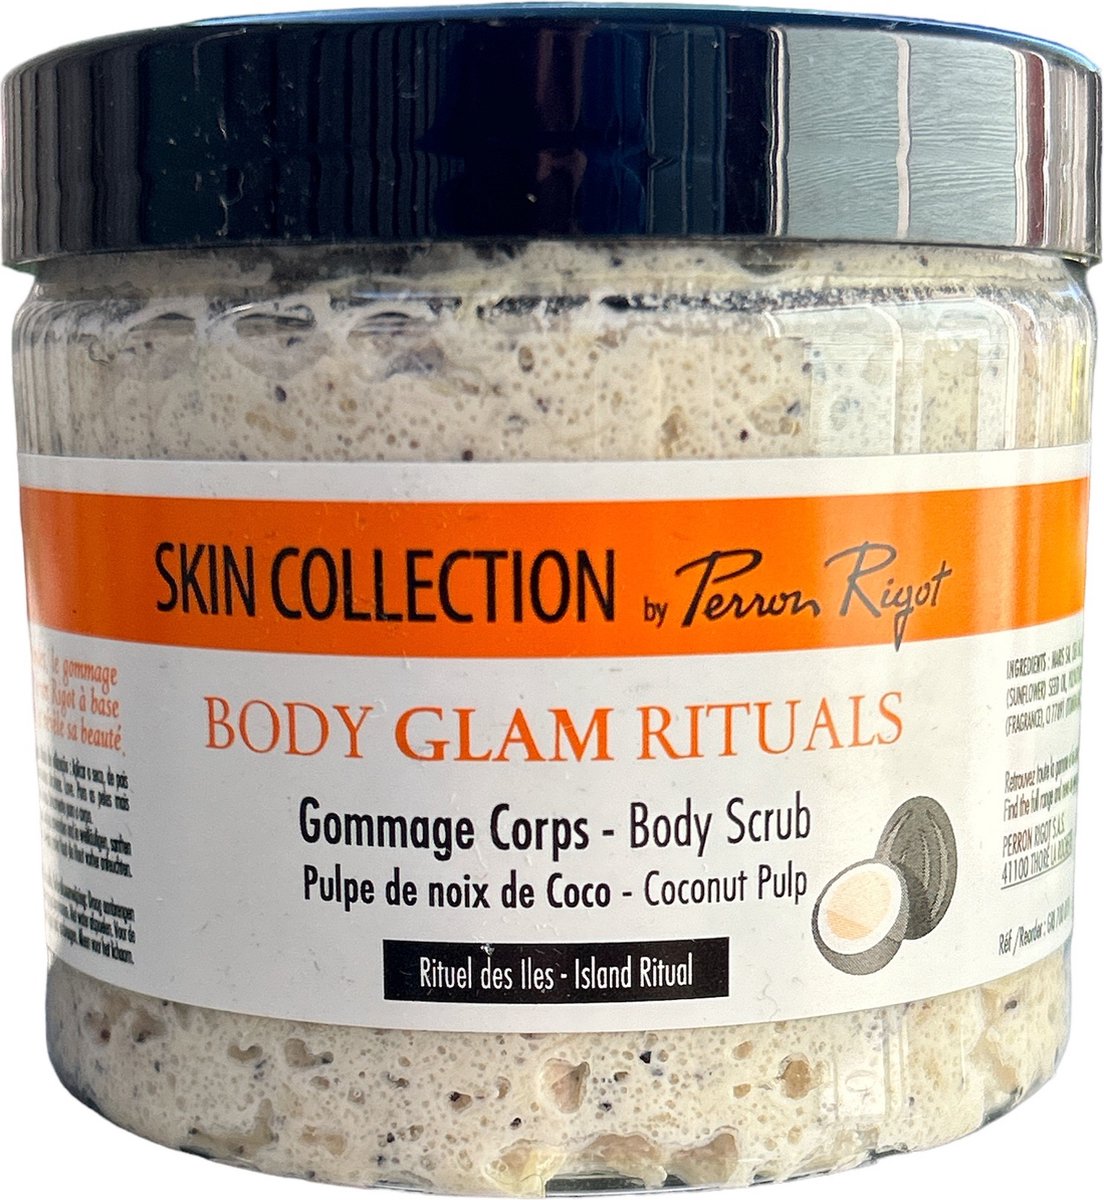 Perron Rigot Skin Collection Body Glam Rituals Body Scrub Coconut Pulp 200ml